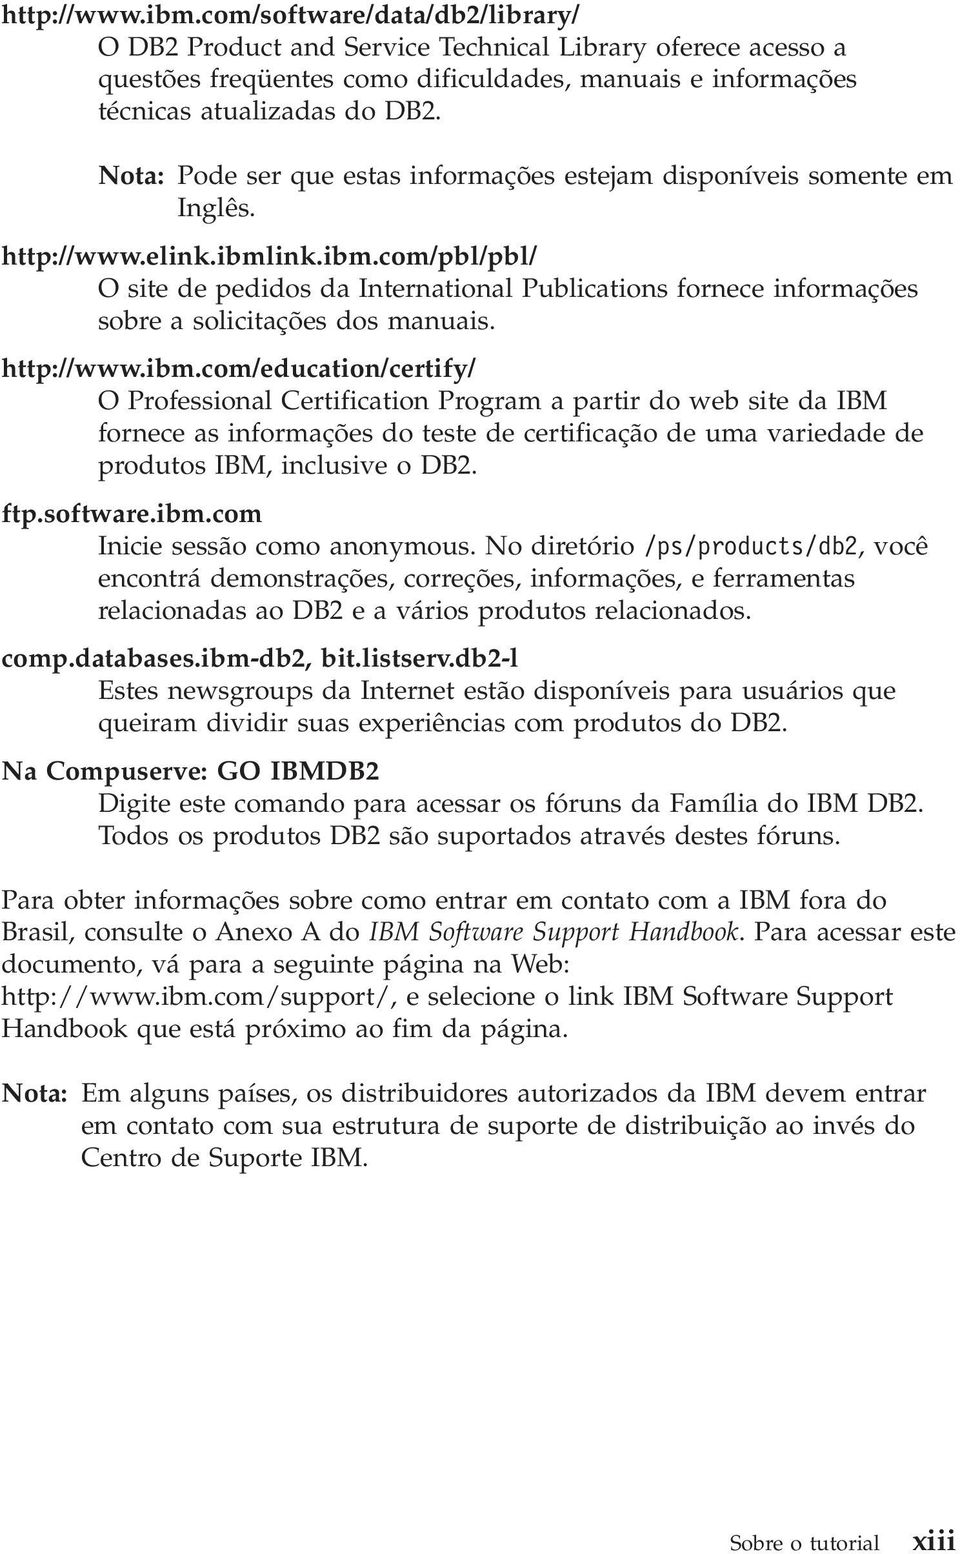 ink.ibm.com/pbl/pbl/ O site de pedidos da International Publications fornece informações sobre a solicitações dos manuais. http://www.ibm.com/education/certify/ O Professional Certification Program a partir do web site da IBM fornece as informações do teste de certificação de uma variedade de produtos IBM, inclusive o DB2.